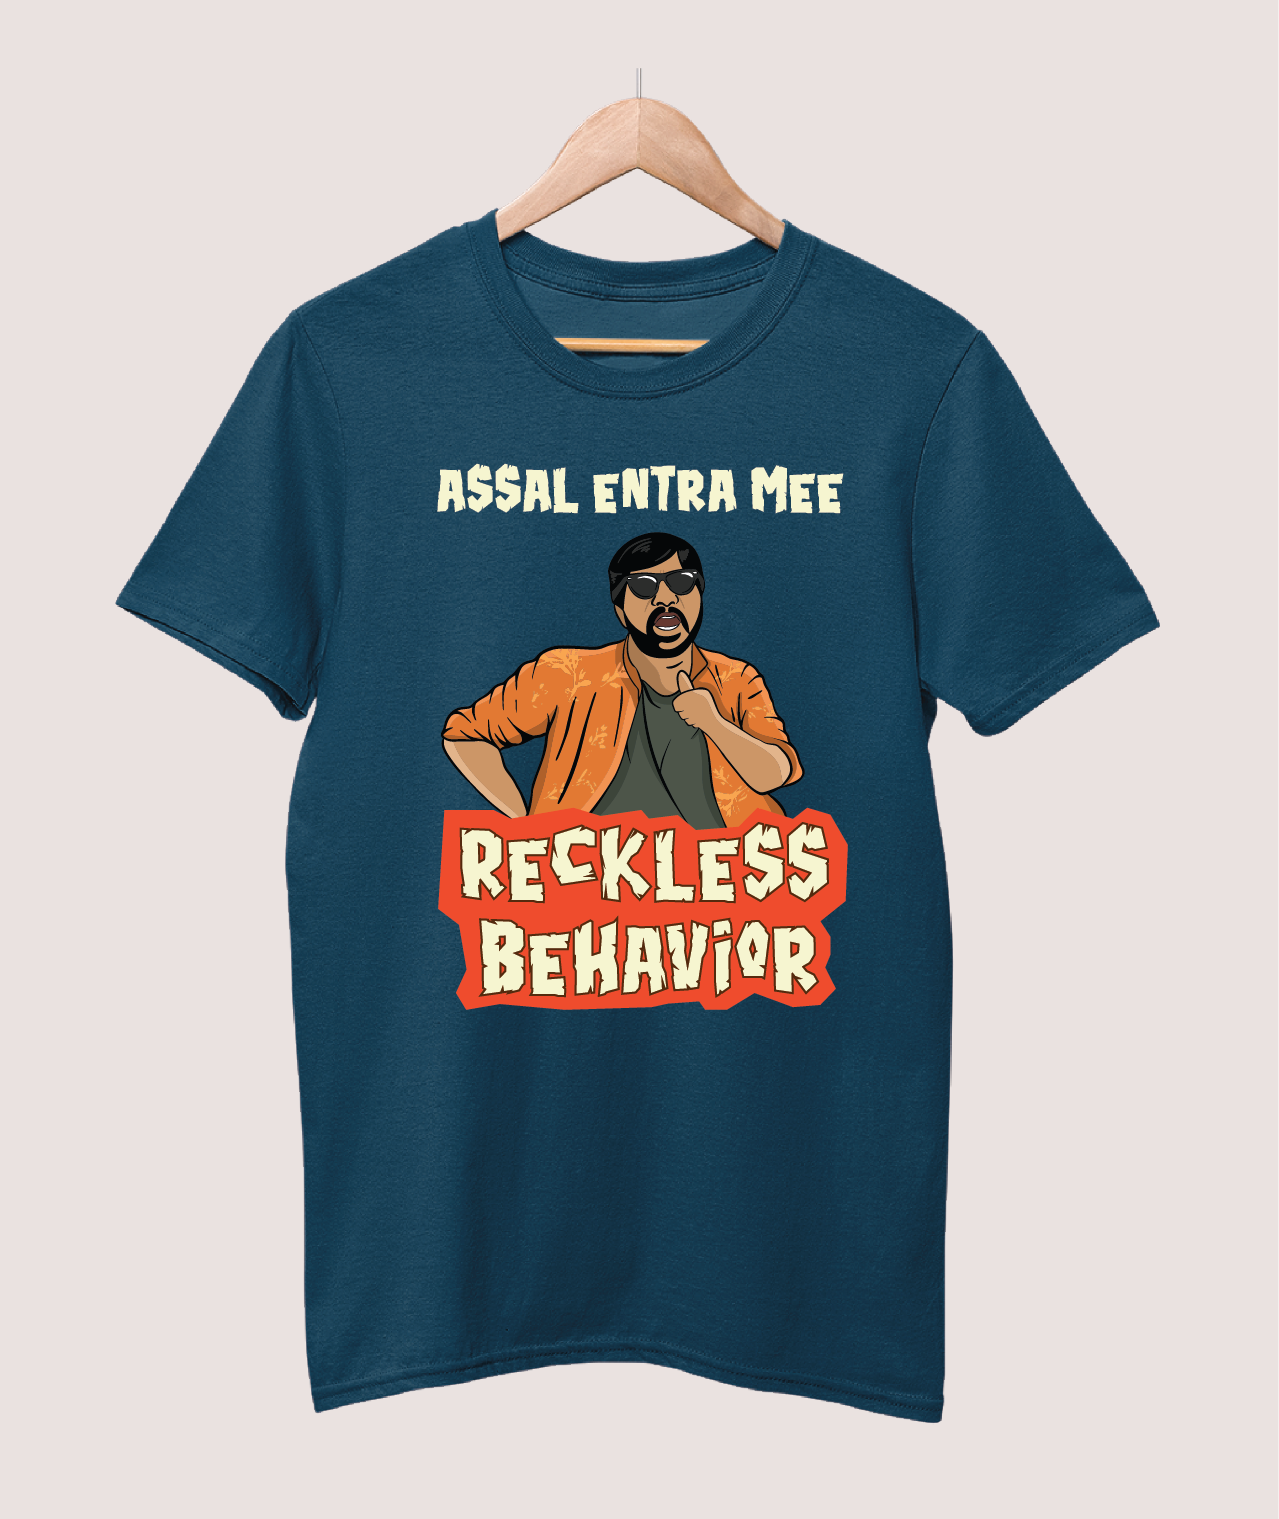 Assal entra mee reckless behavior T-shirt